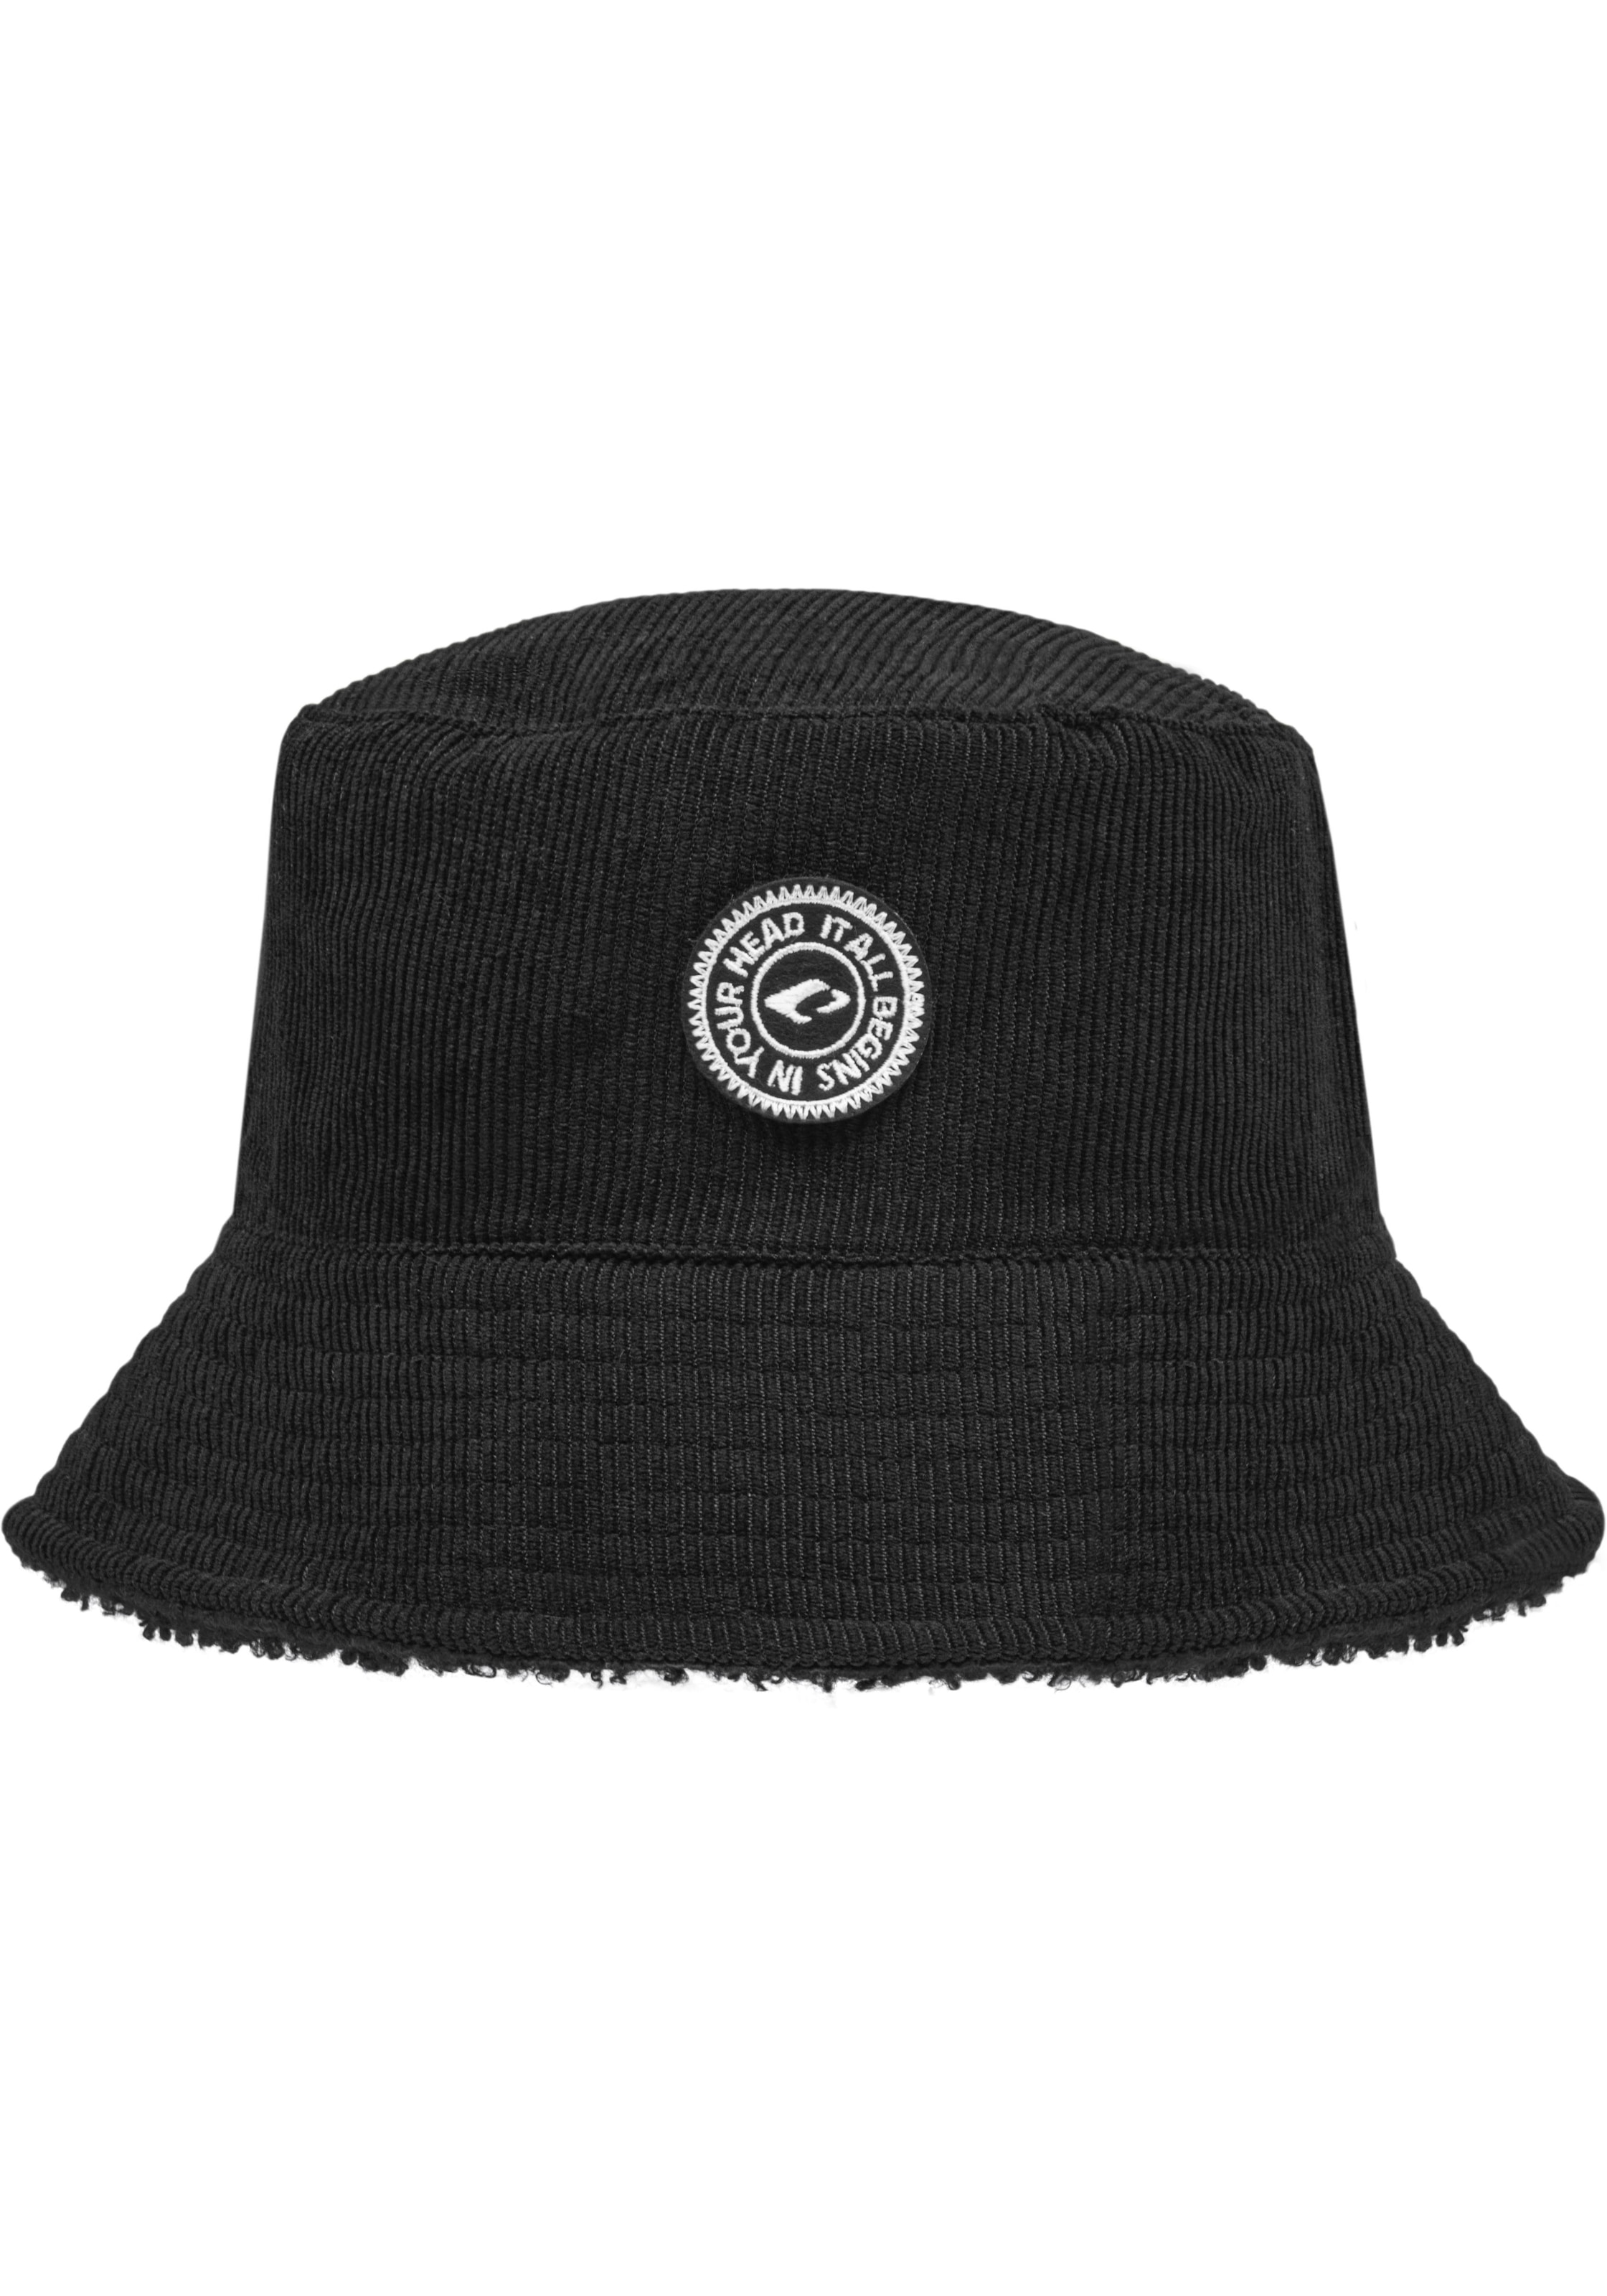 shoppen auf jetzt | kaufen Hüte Hut Trendy online